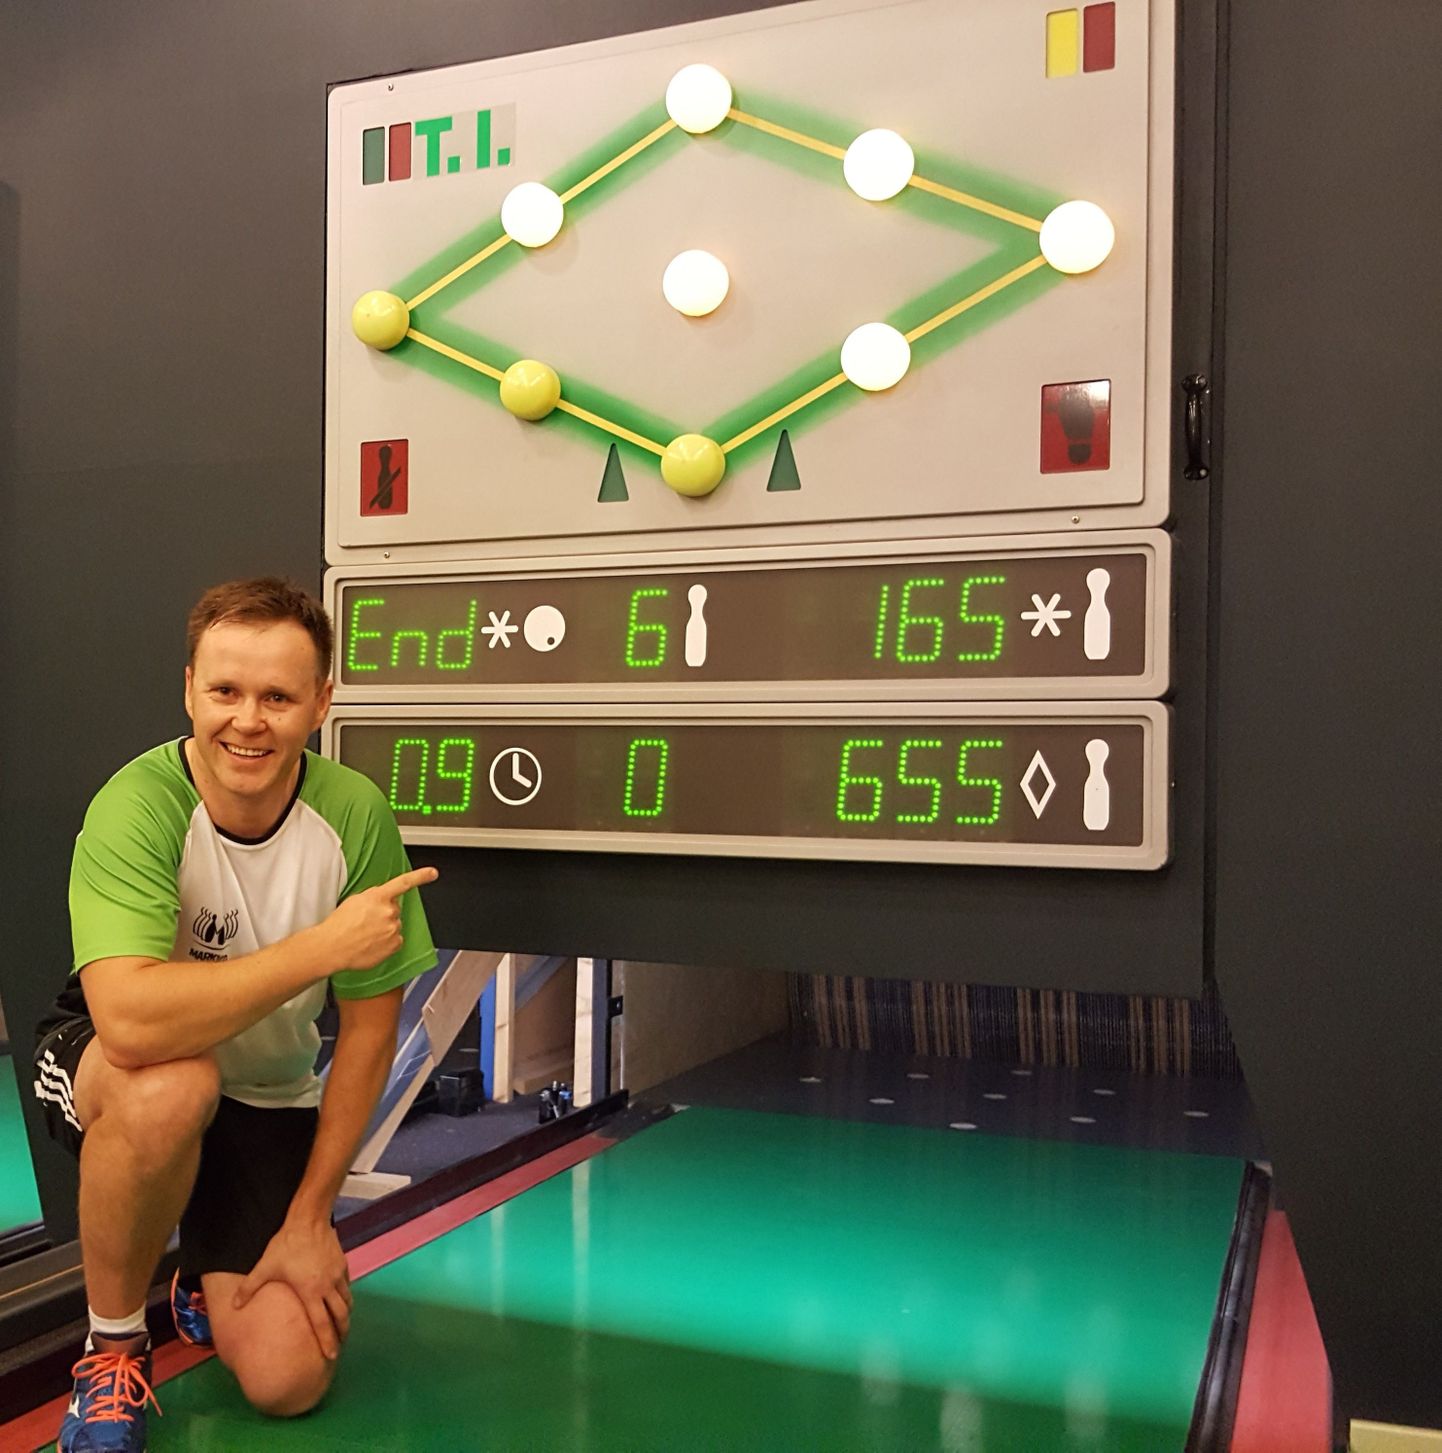 Markko Abeli individuaalne tulemus sportkeegli paarismängu Eesti meistrivõistlustel oli 655 kurikat, mis tähistab uut Eesti rekordit.